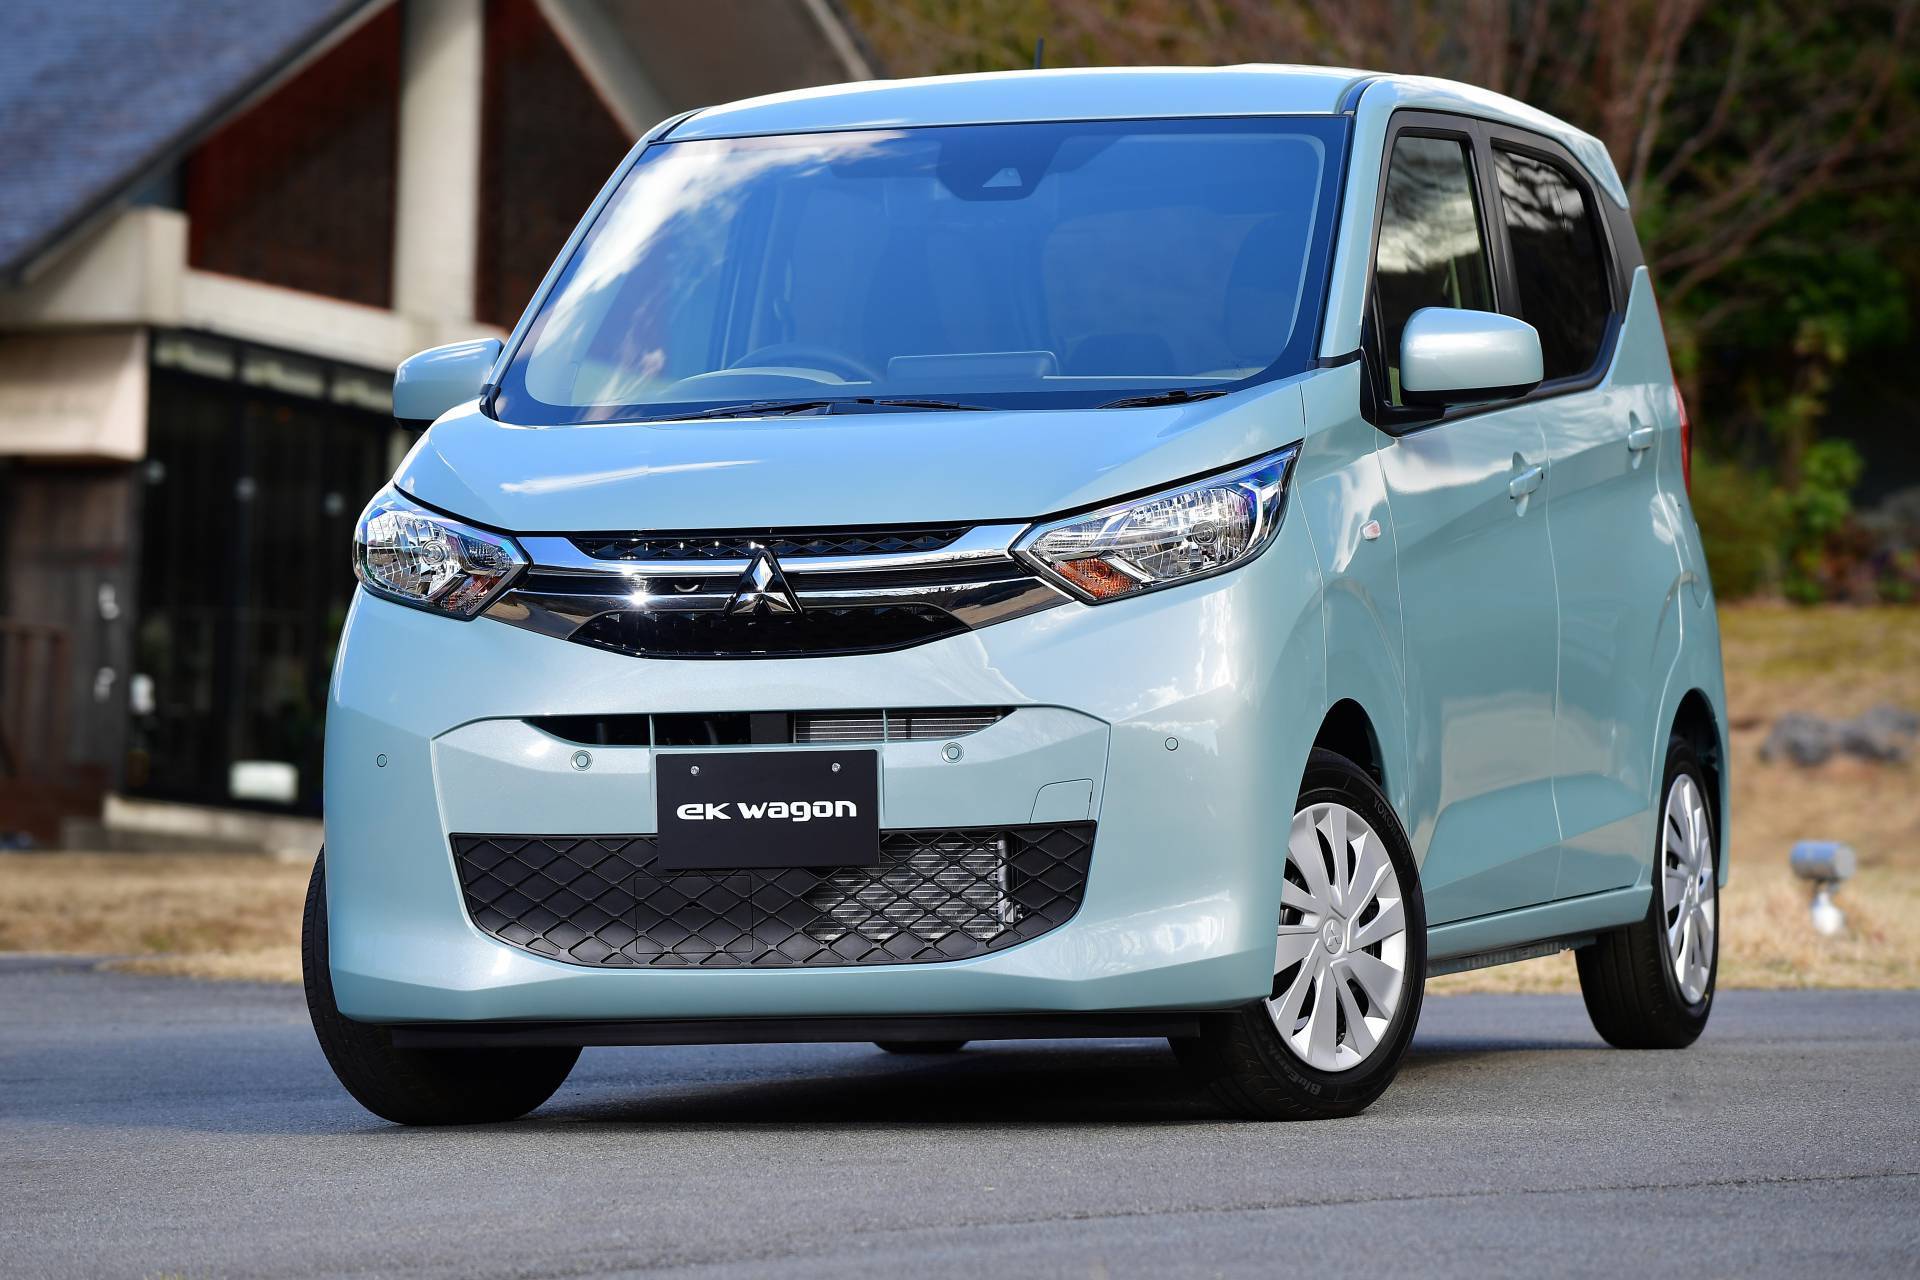 Chiếc xe giá siêu rẻ chỉ 271 triệu đồng của Mitsubishi được trang bị những gì?